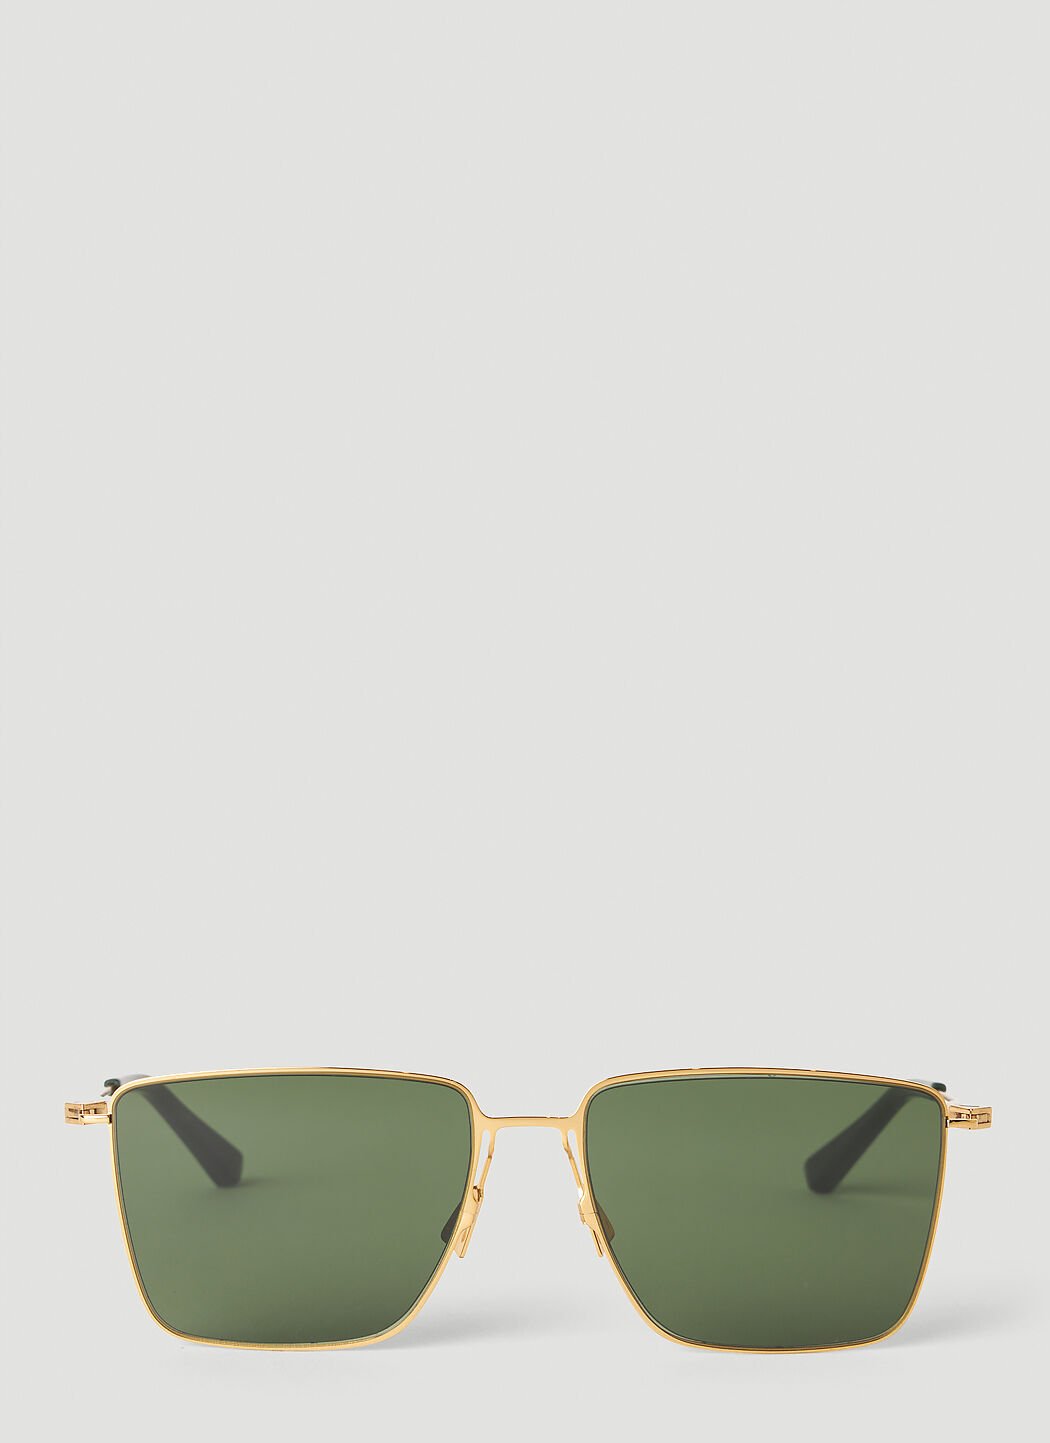 Burberry Classic Metal Square Sunglasses Beige bur0143010